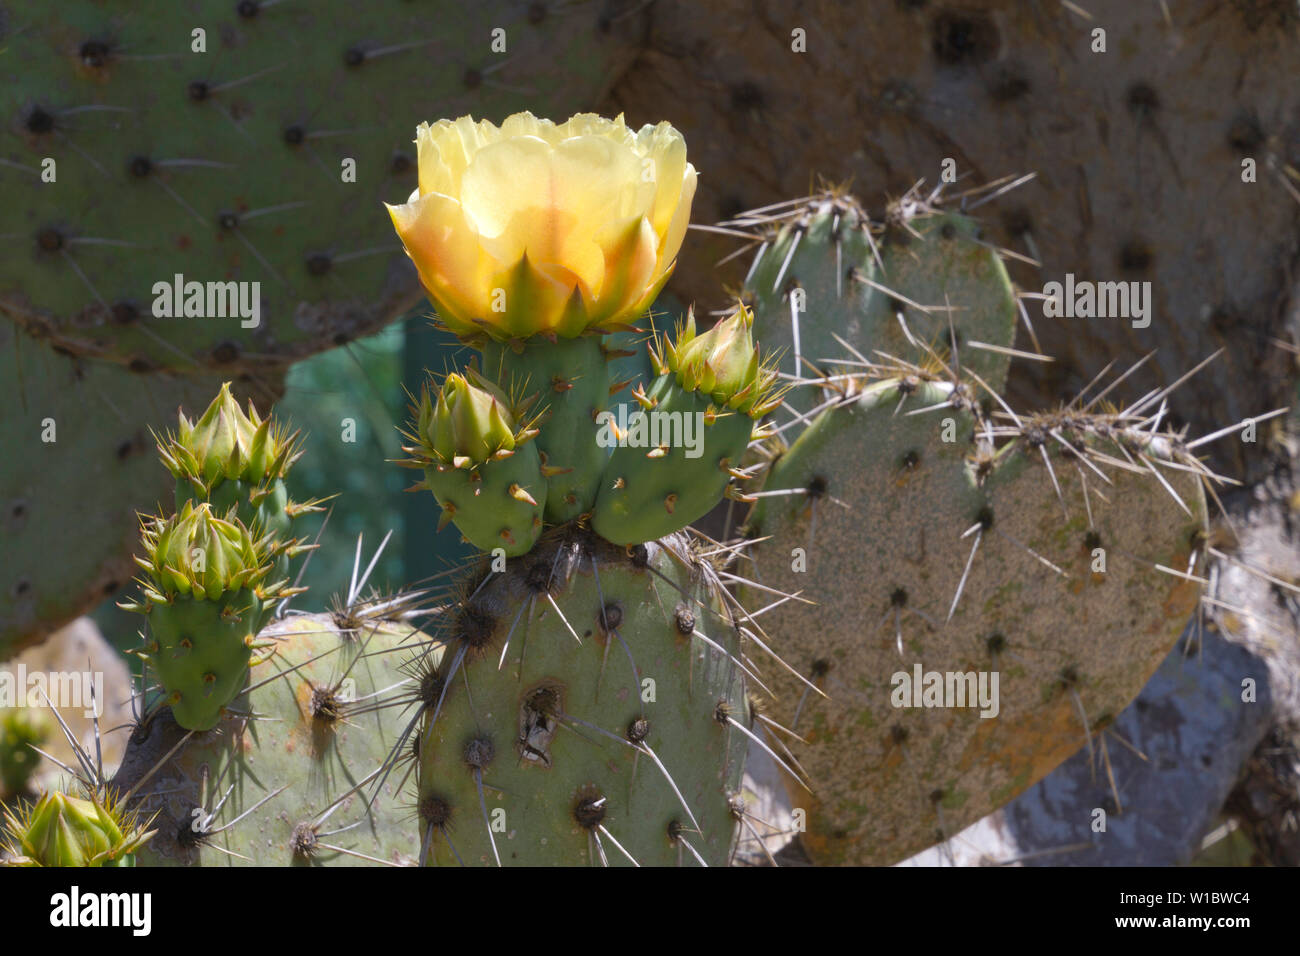 Close-up of a flowering cactus avec une grande fleur jaune, épines et les bourgeons Banque D'Images